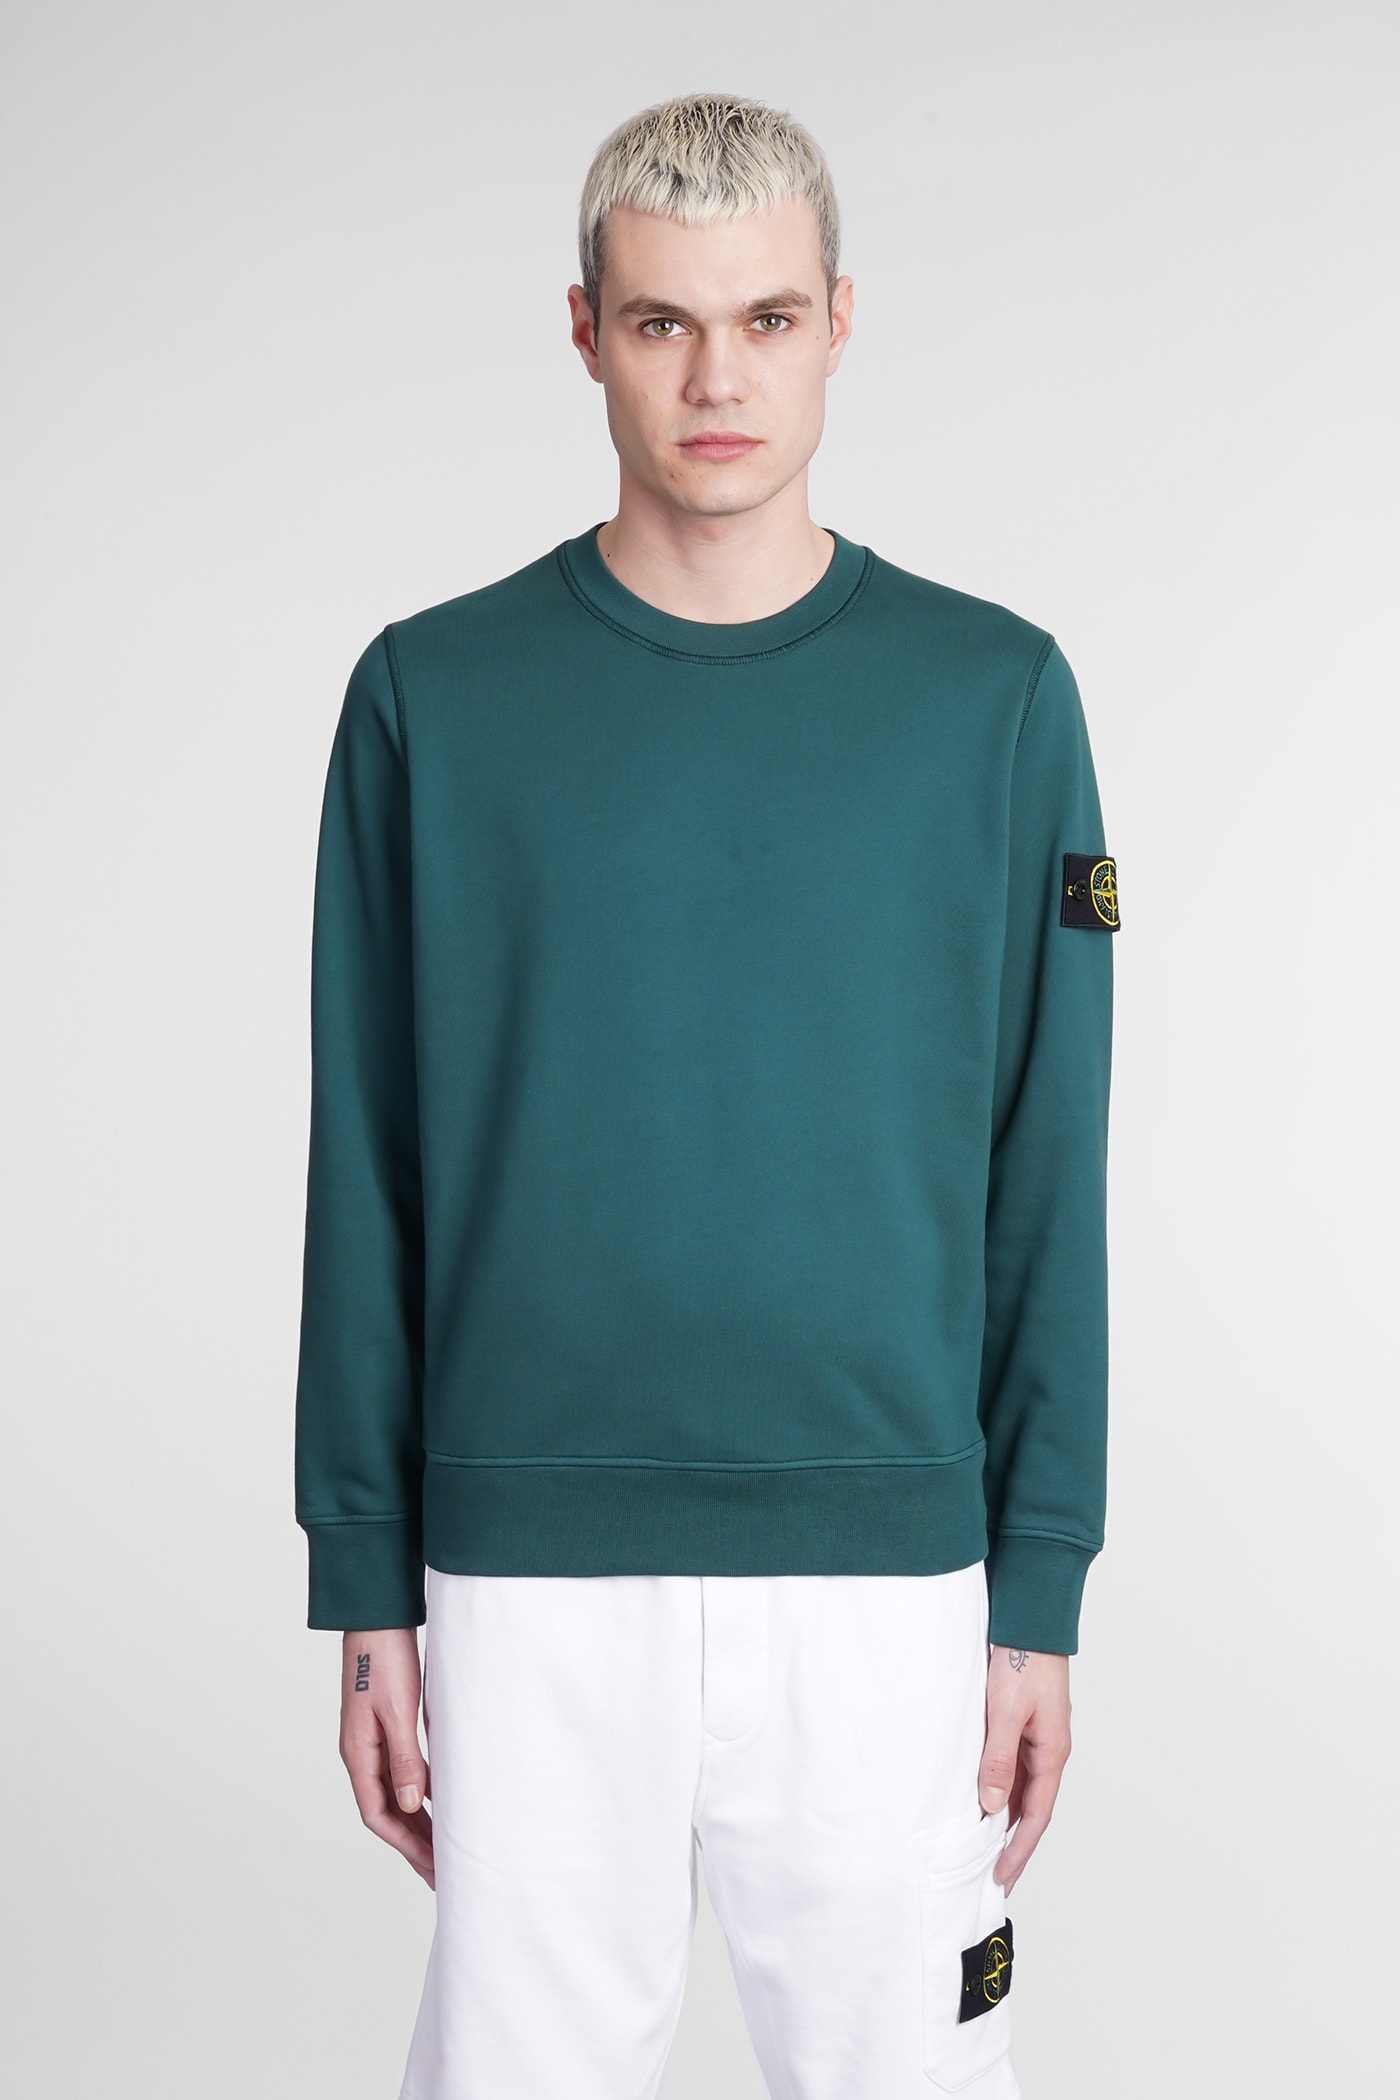 diepte beheerder Geaccepteerd Stone Island Sweatshirt In Green Cotton | Smart Closet